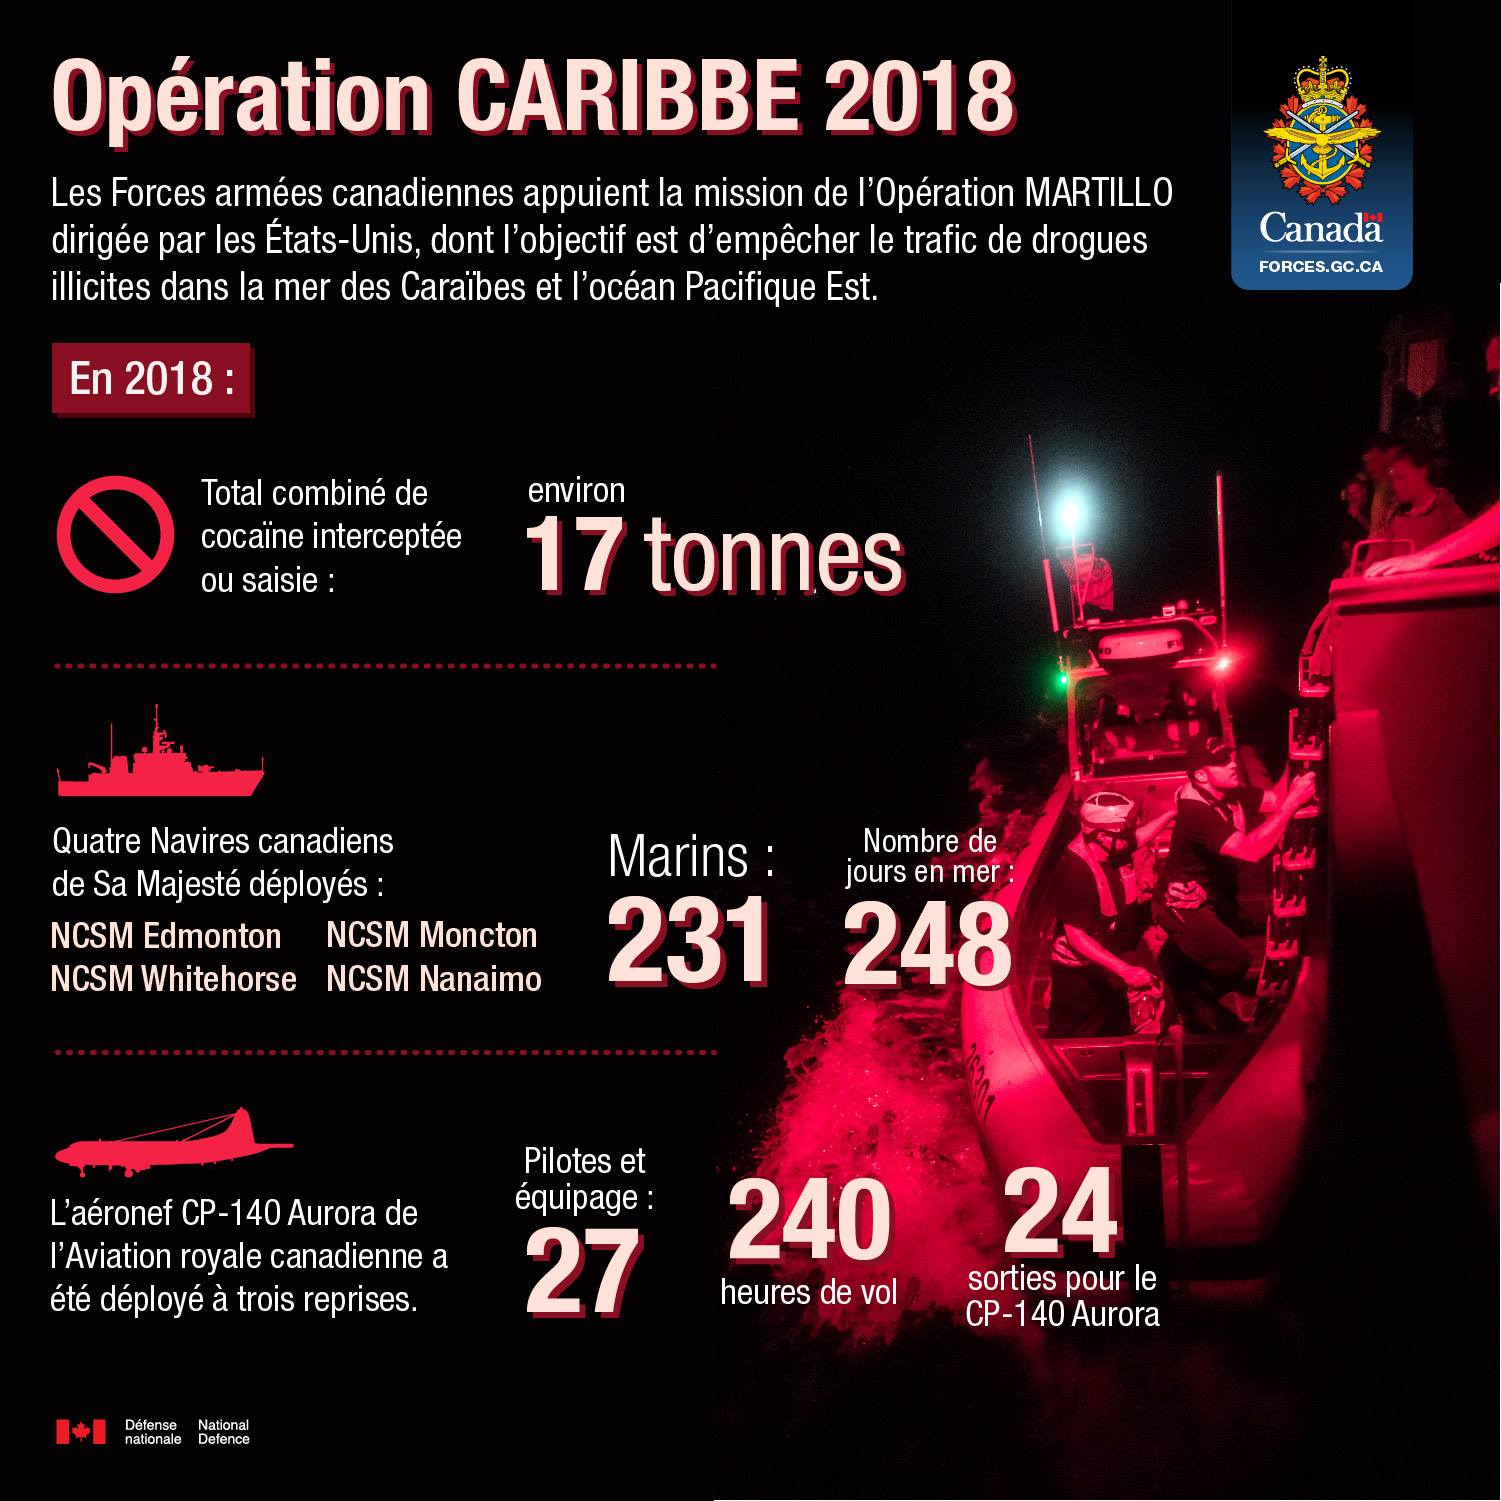 Les Forces armées canadiennes appuient la mission de l'Opération MARTILLO dirigée par les Étas-Unis, dont l'objectif est d'empêcher le trafic de drogues illicites dans la mer des Caraïbes et l'océan Pacifique Est.